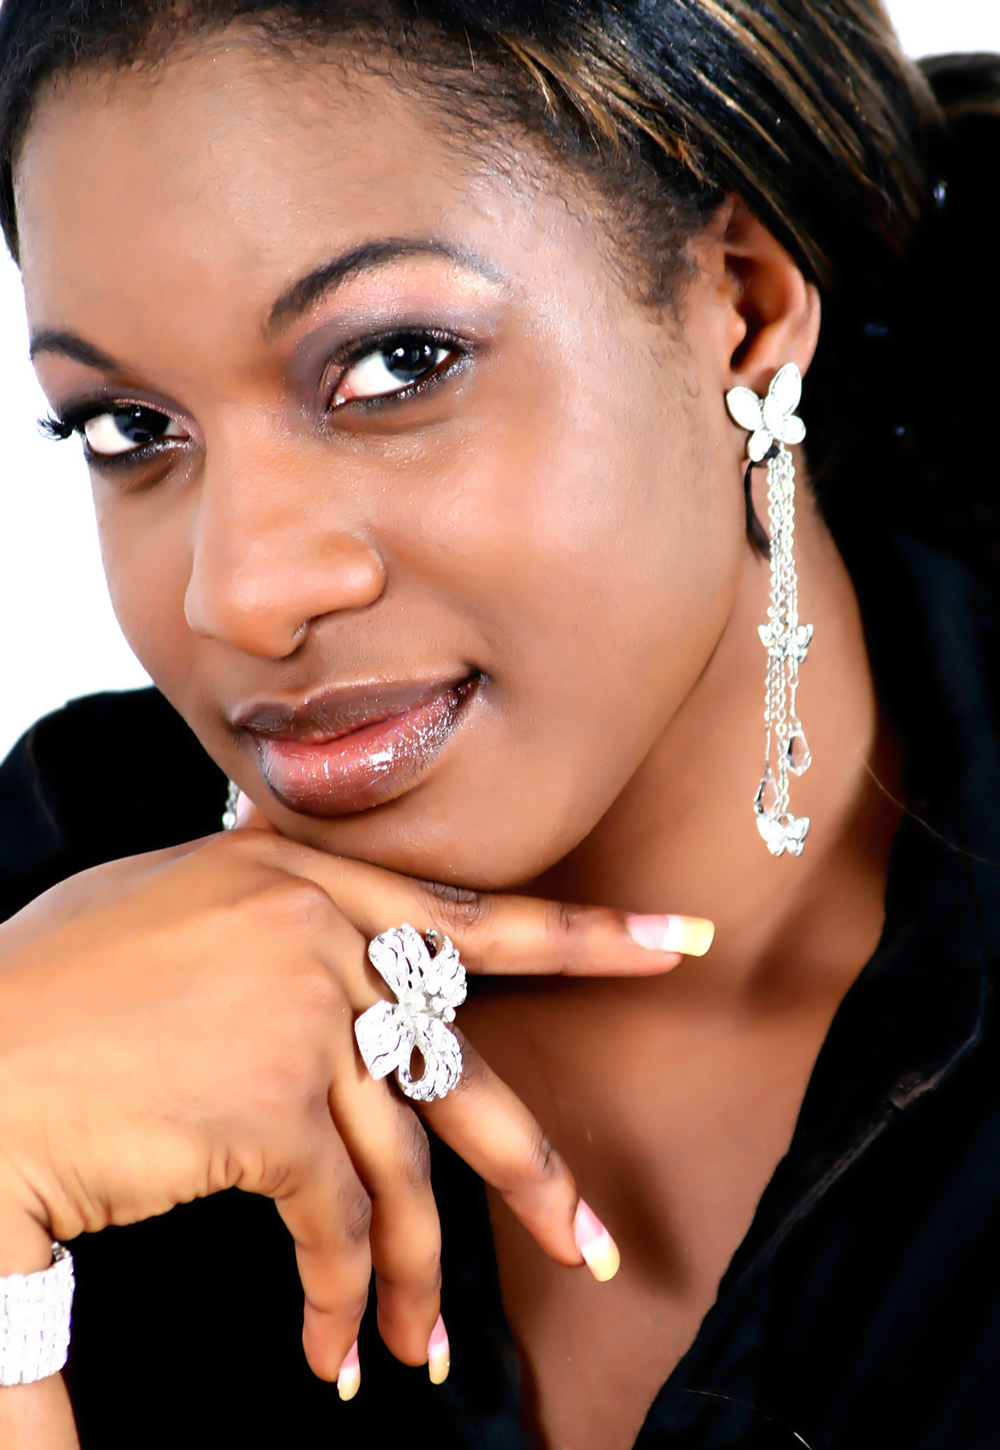 Nollywood et ses belles actrices : Chika Ike, appréciez la sensualité africaine